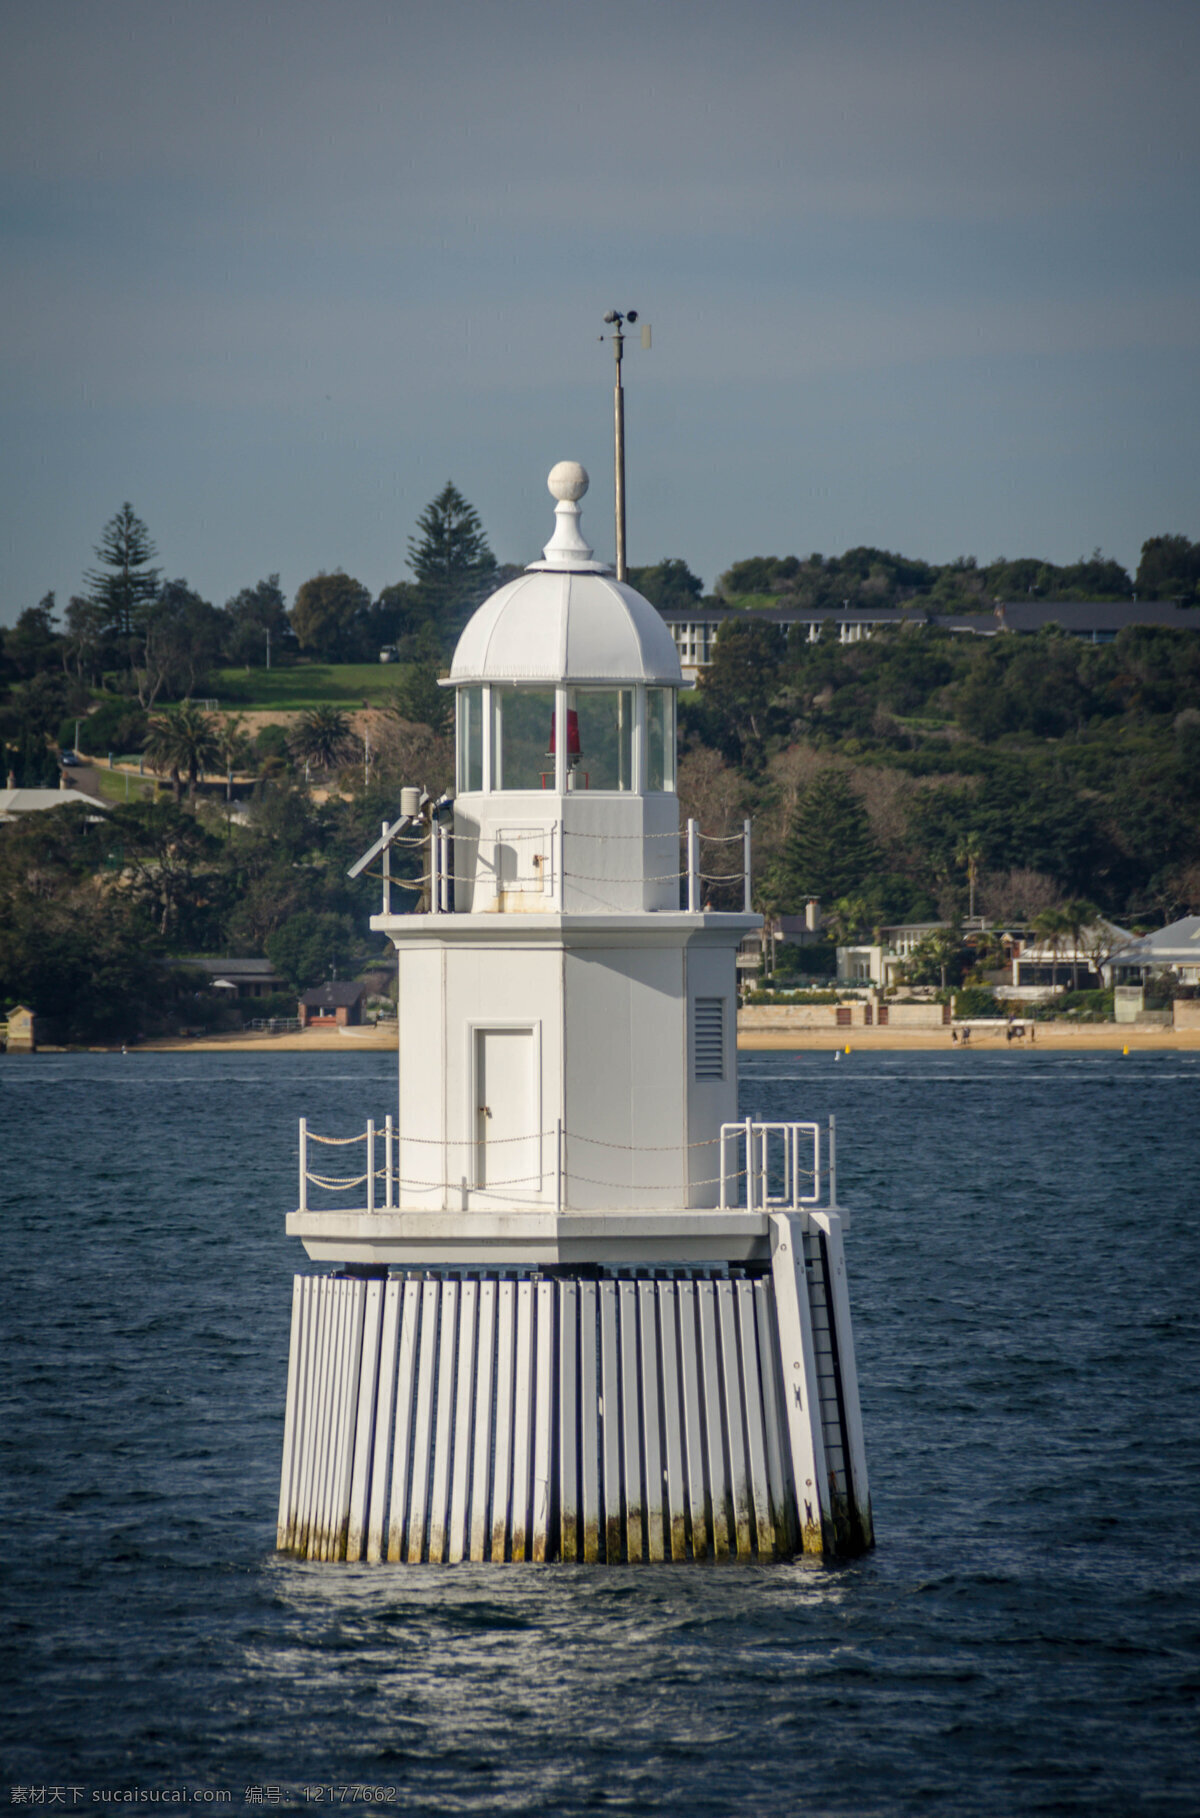 悉尼港浮标 悉尼 澳大利亚 城市 旅游 外国 浮标 风景 旅游摄影 人文景观